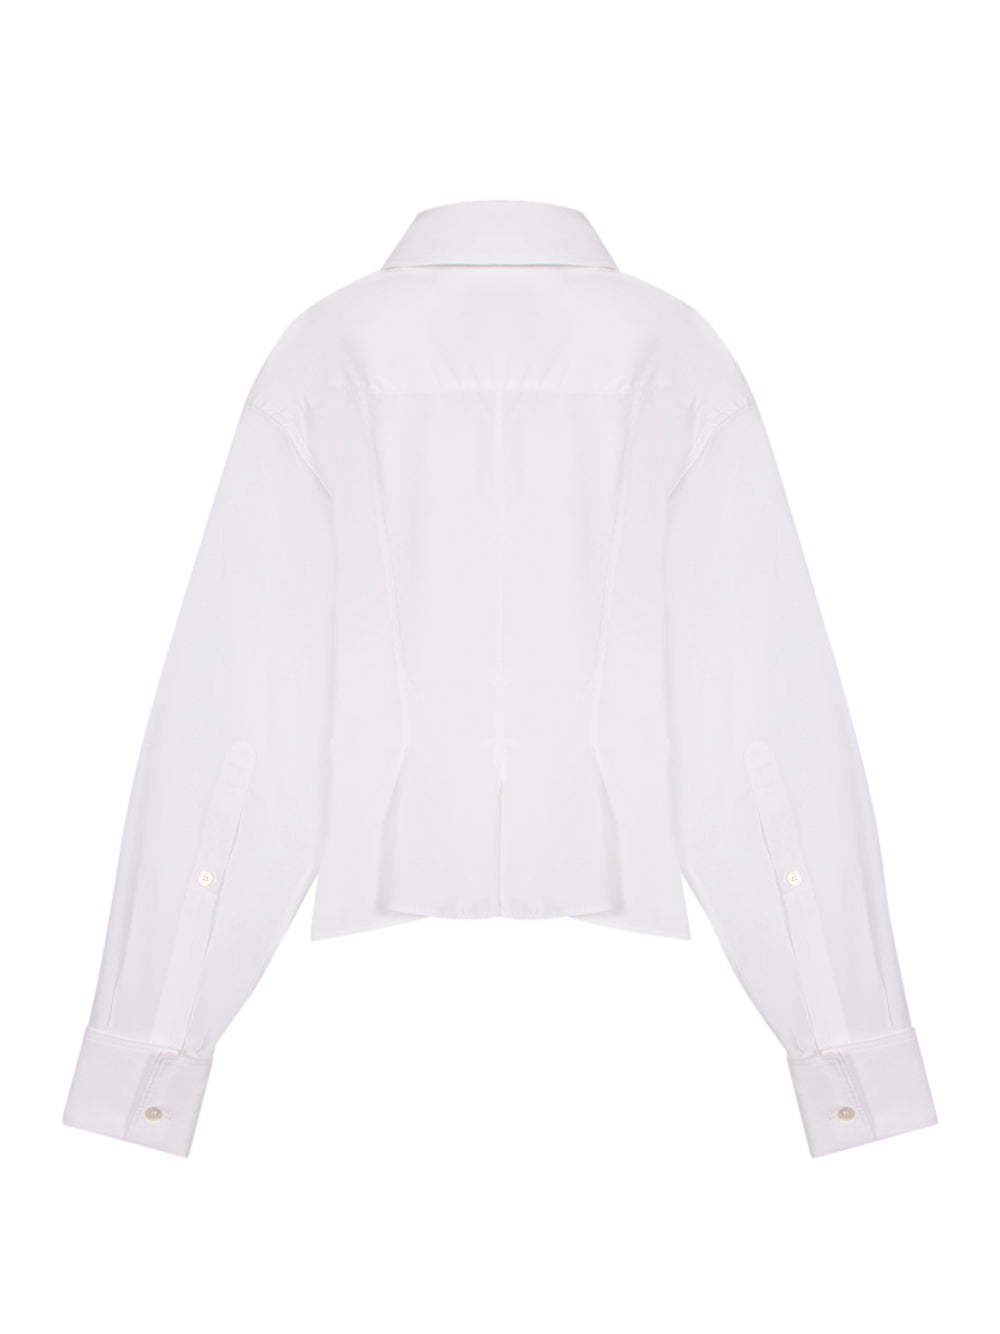 Peplum Shirt Pure White